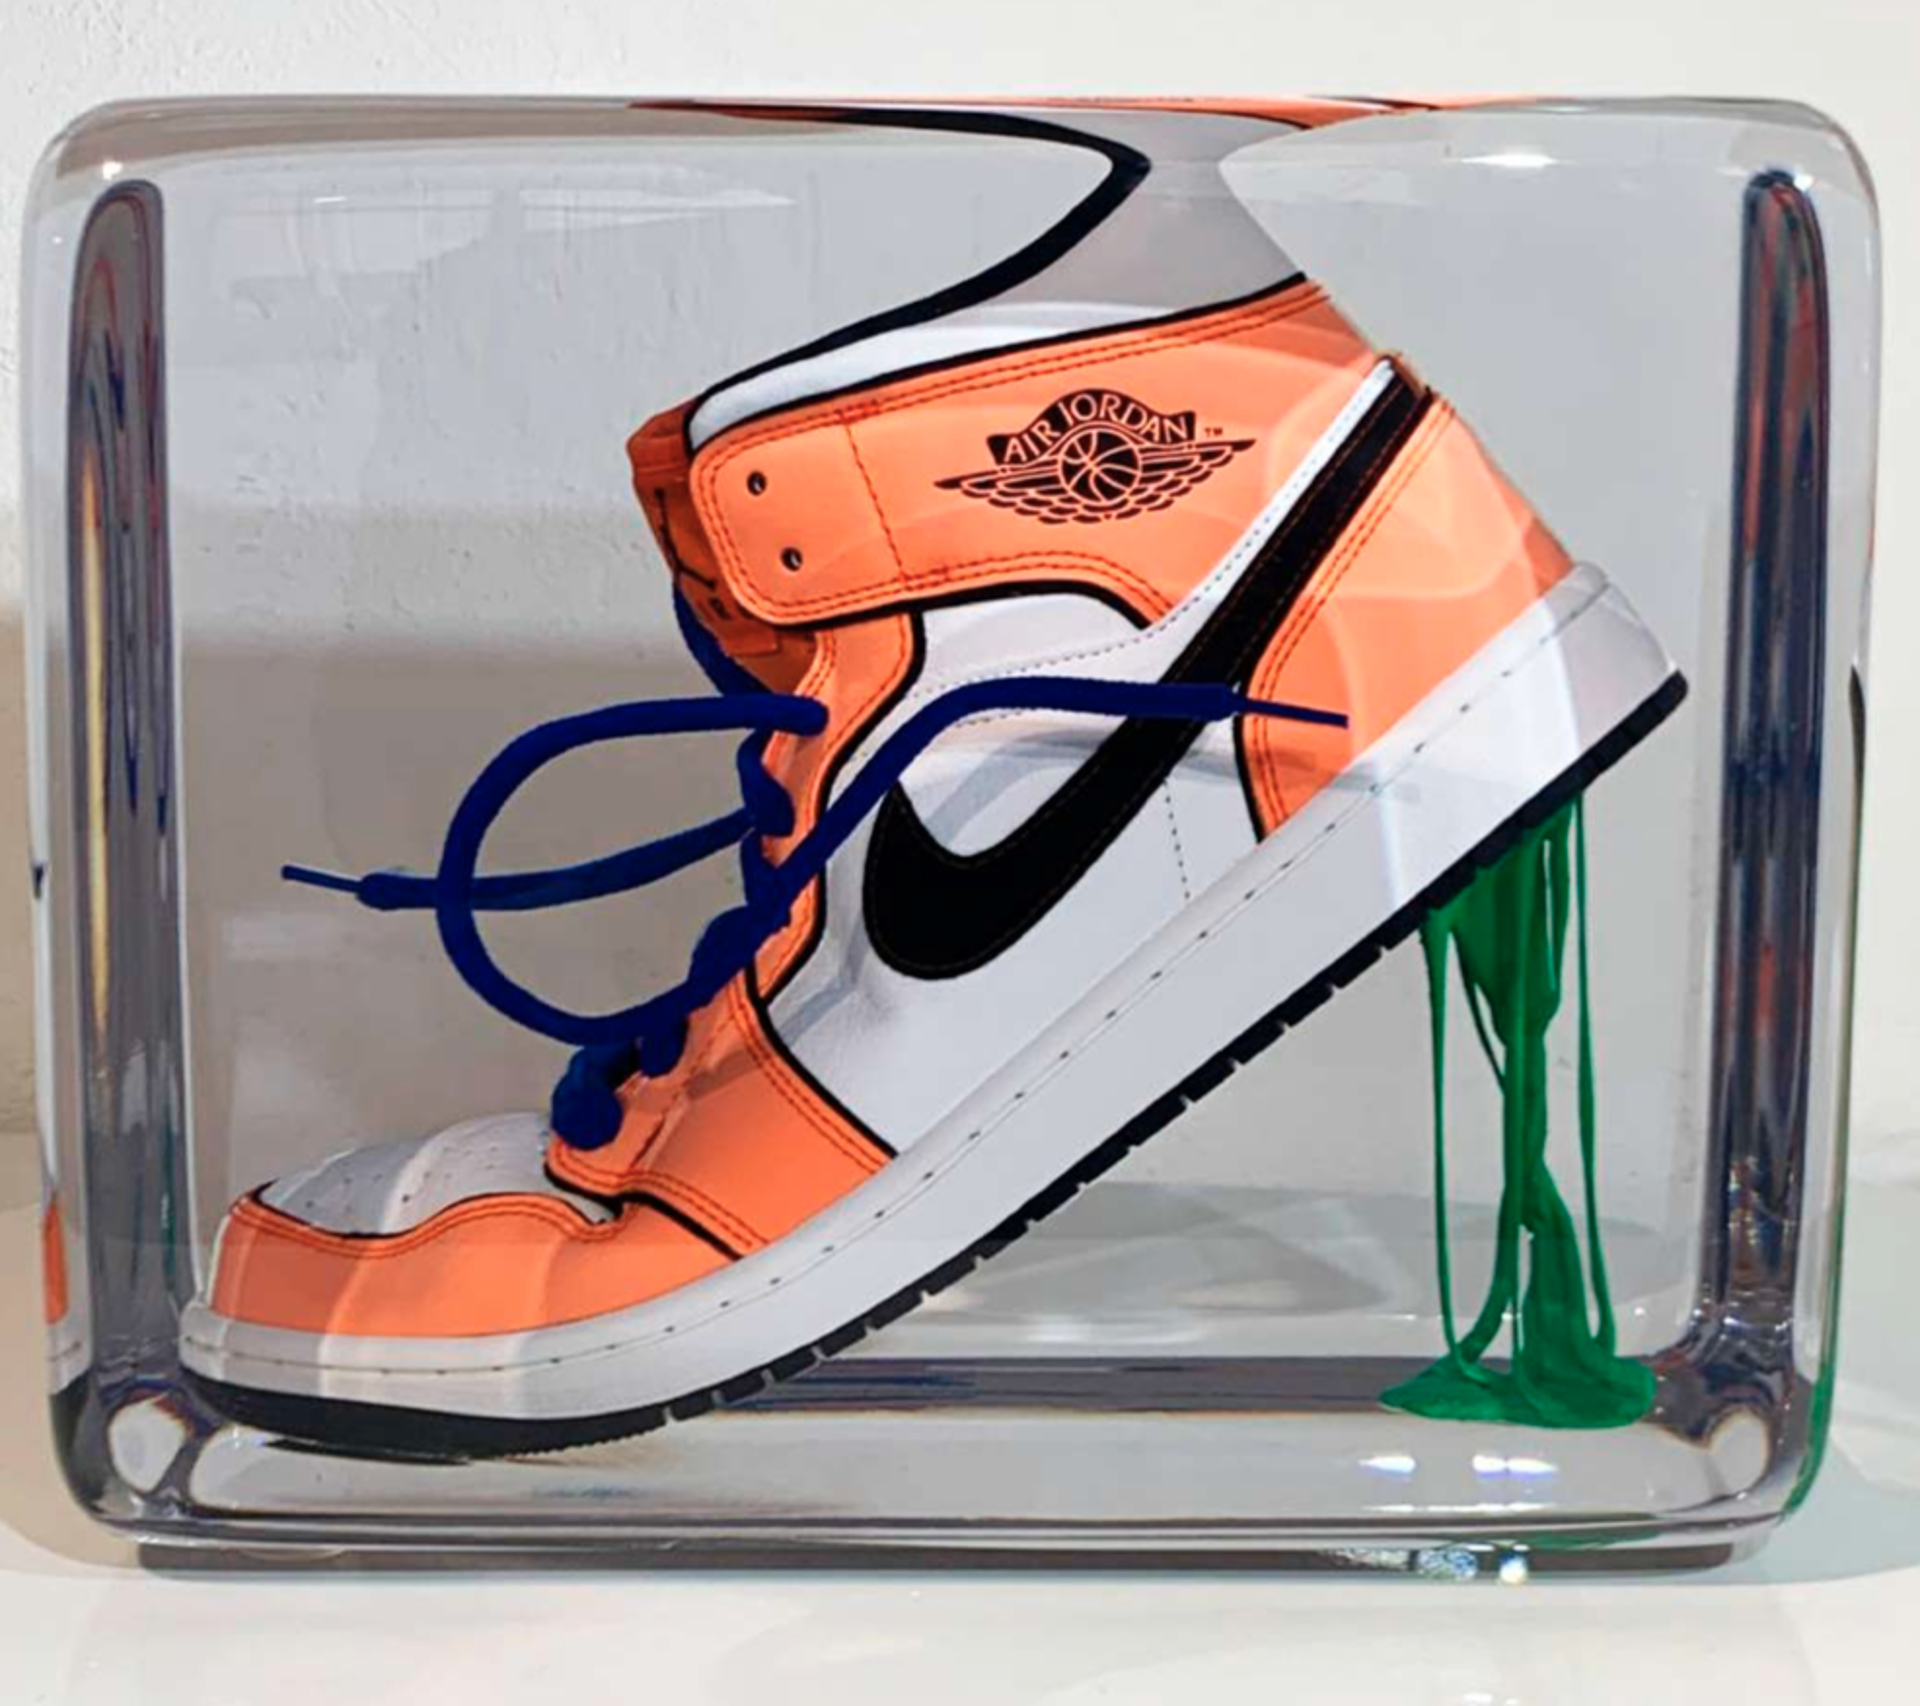 Sneakers & Gum (Orange Turf) by Emmanuel Meneses